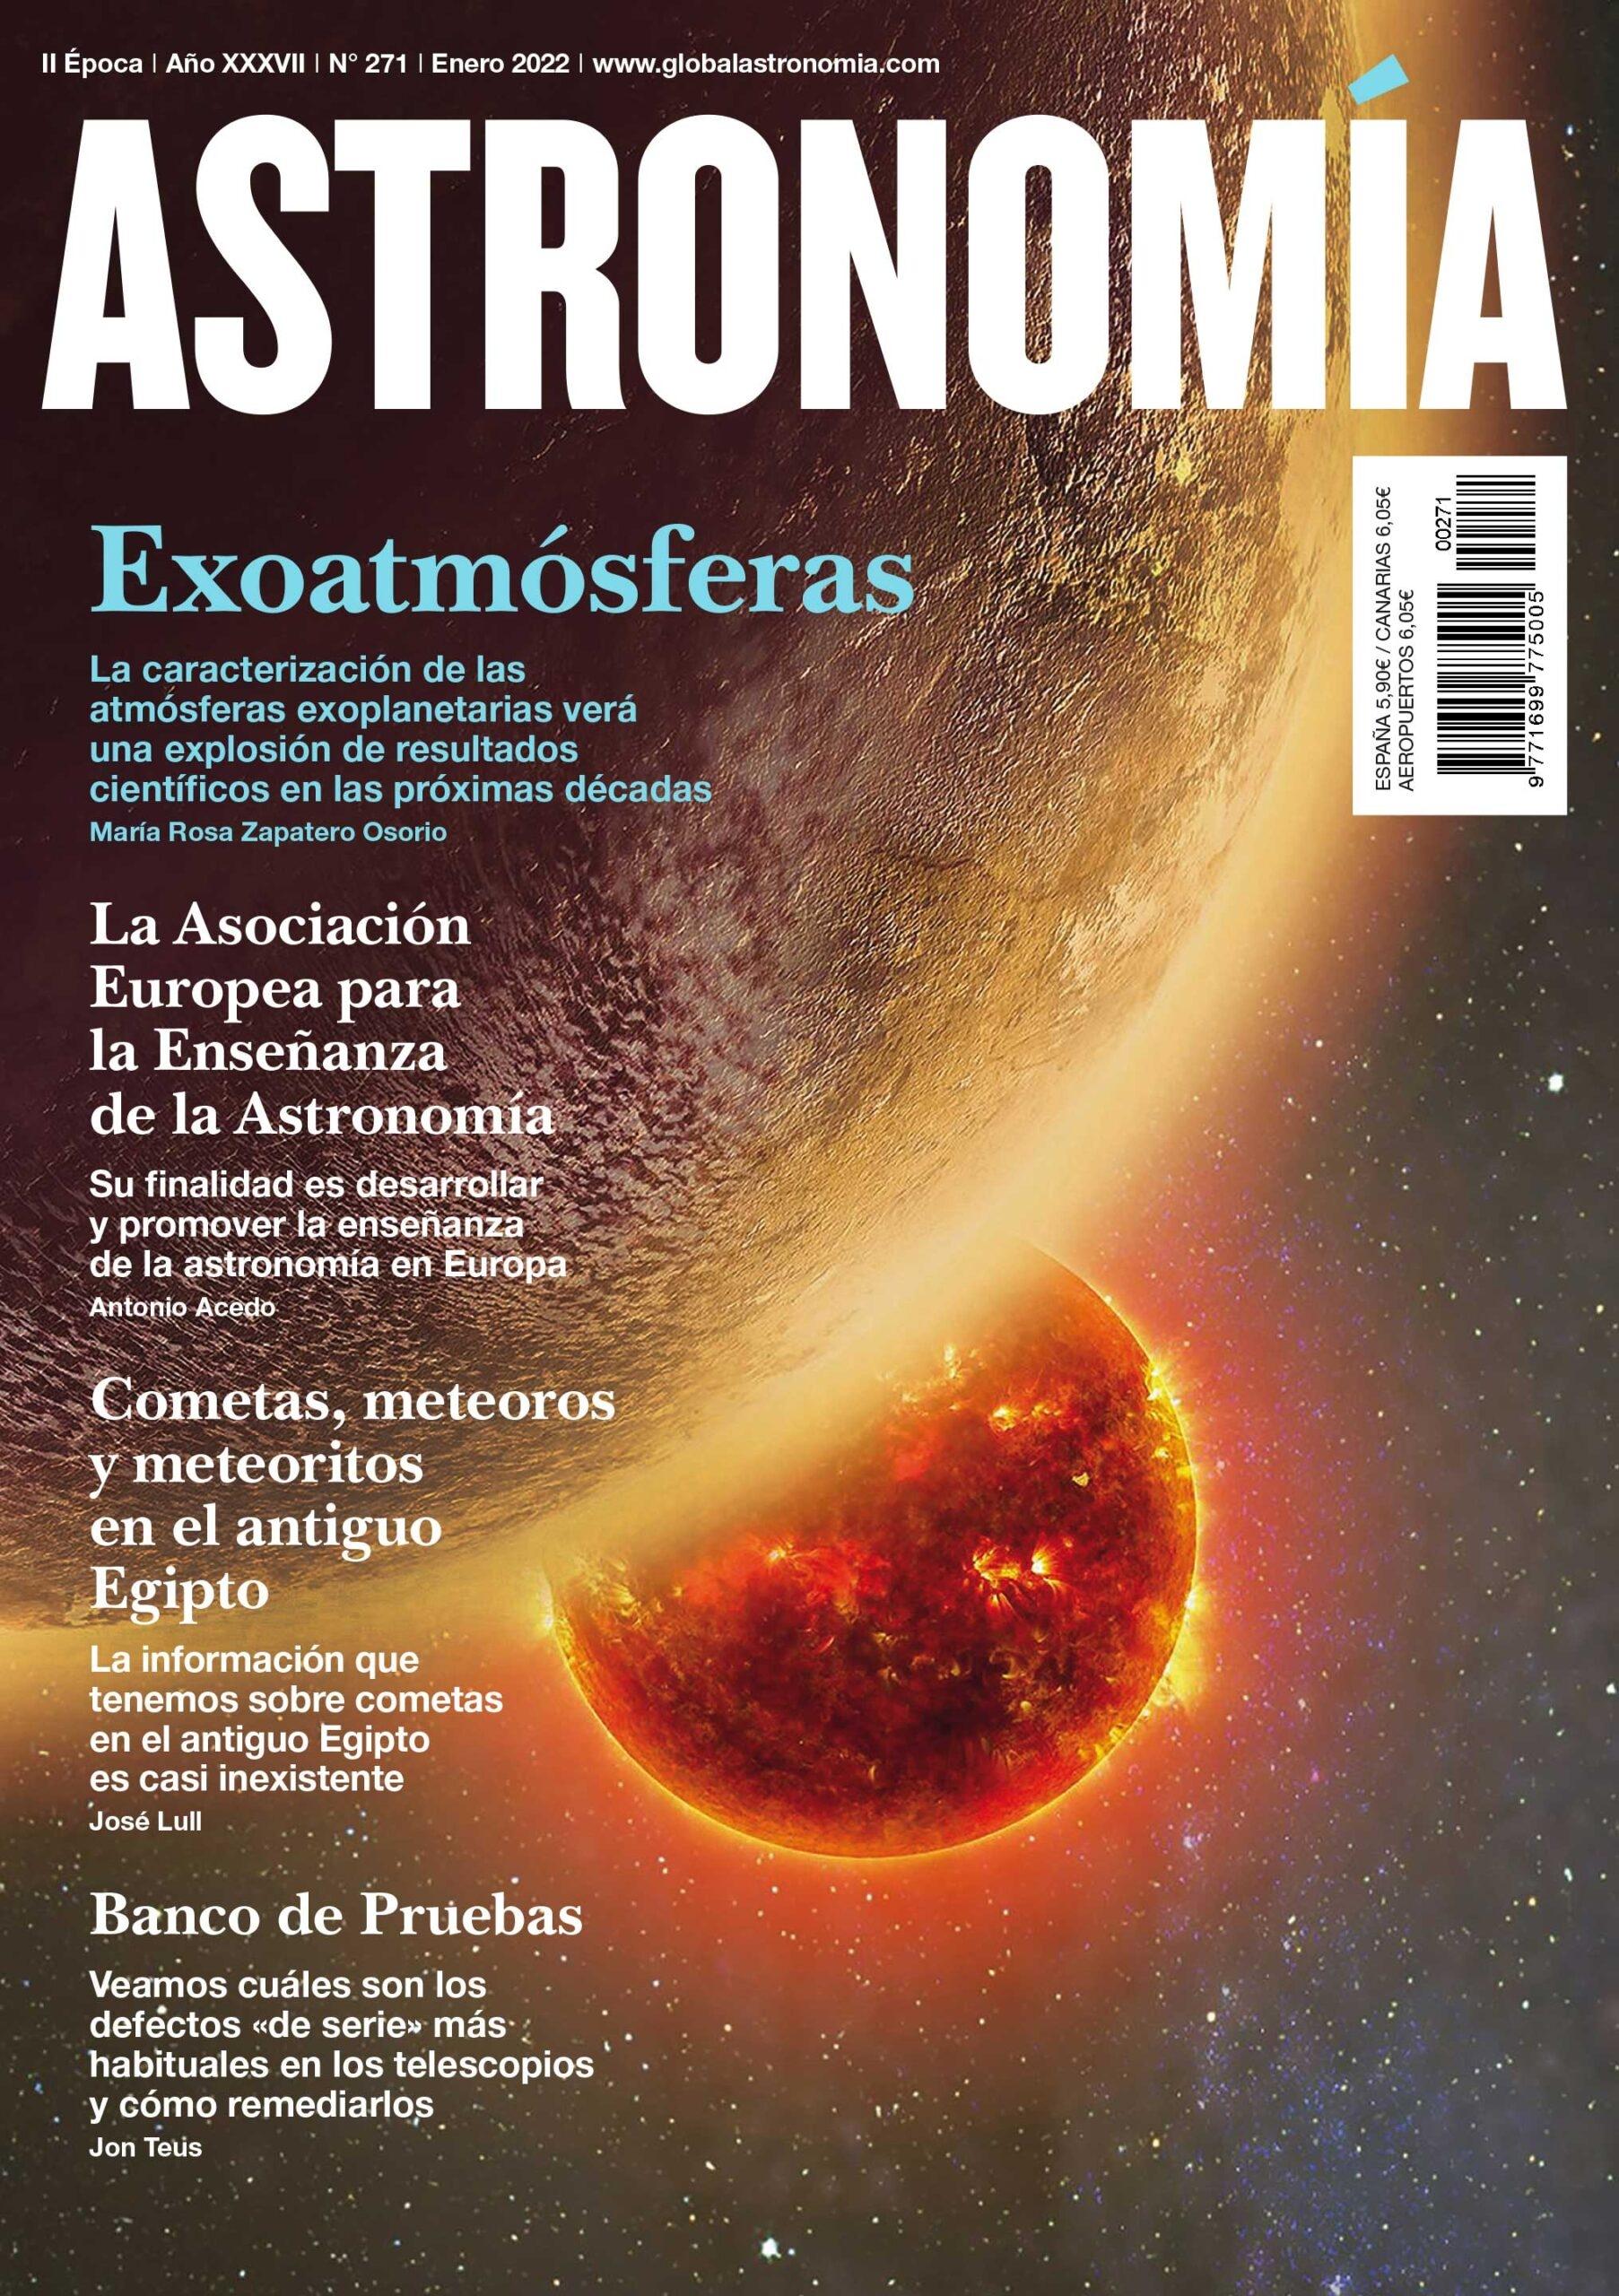 Astronomia nº 271 "Enero 2022. Exoatmósferas"